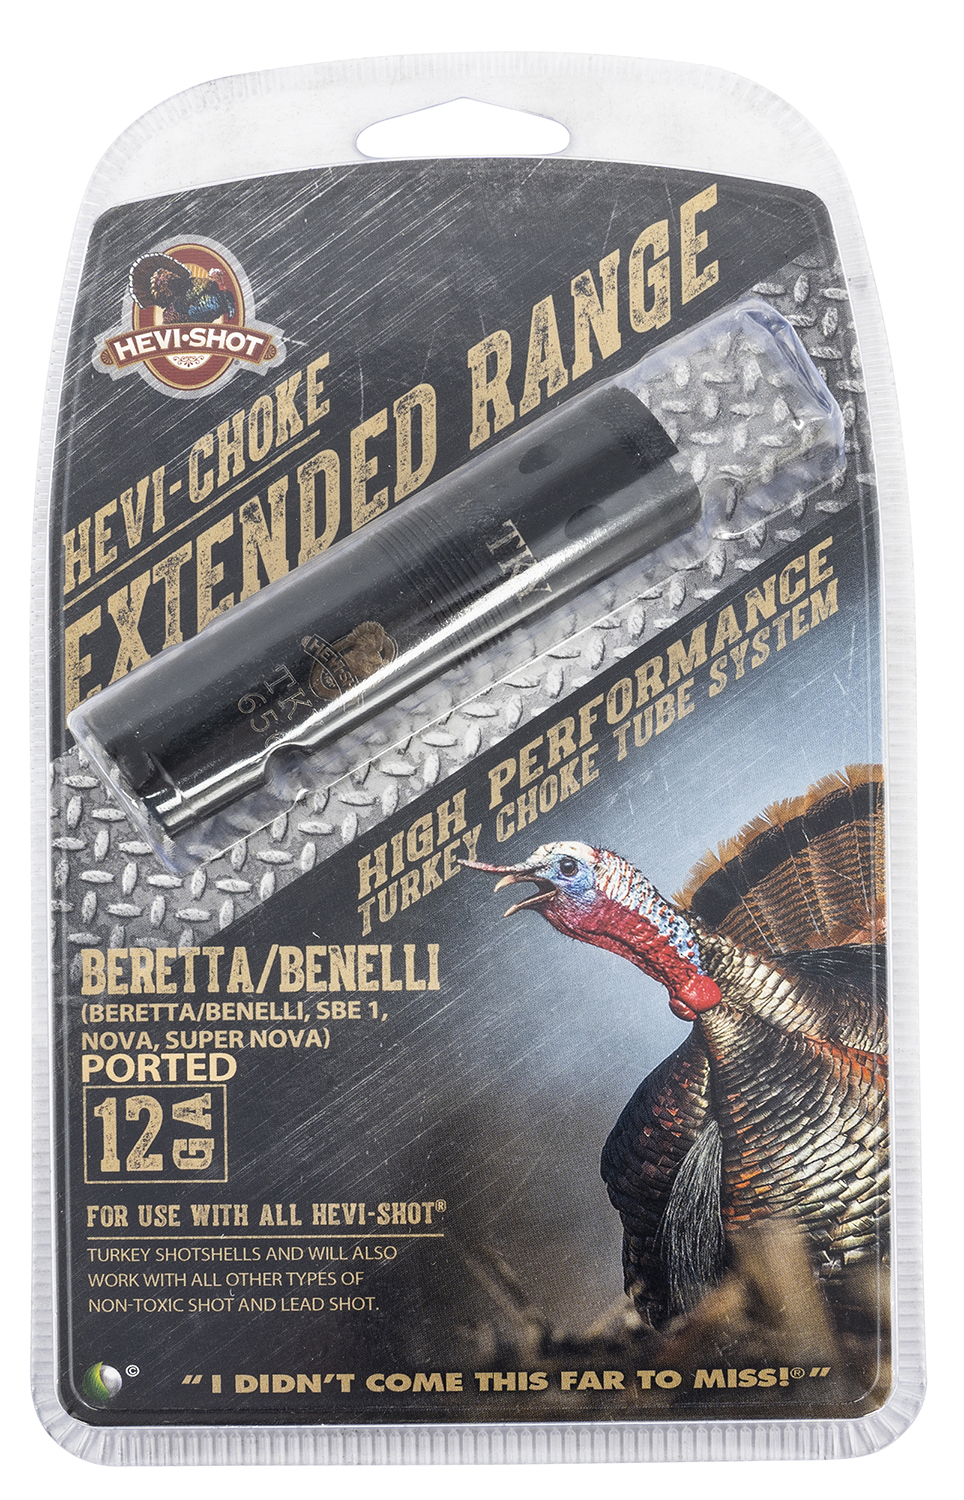 HEVI-Shot 450122 Hevi-Choke Turkey Benelli/Beretta 12 Gauge Extended Range 17-4 Stainless Steel Black (Ported)